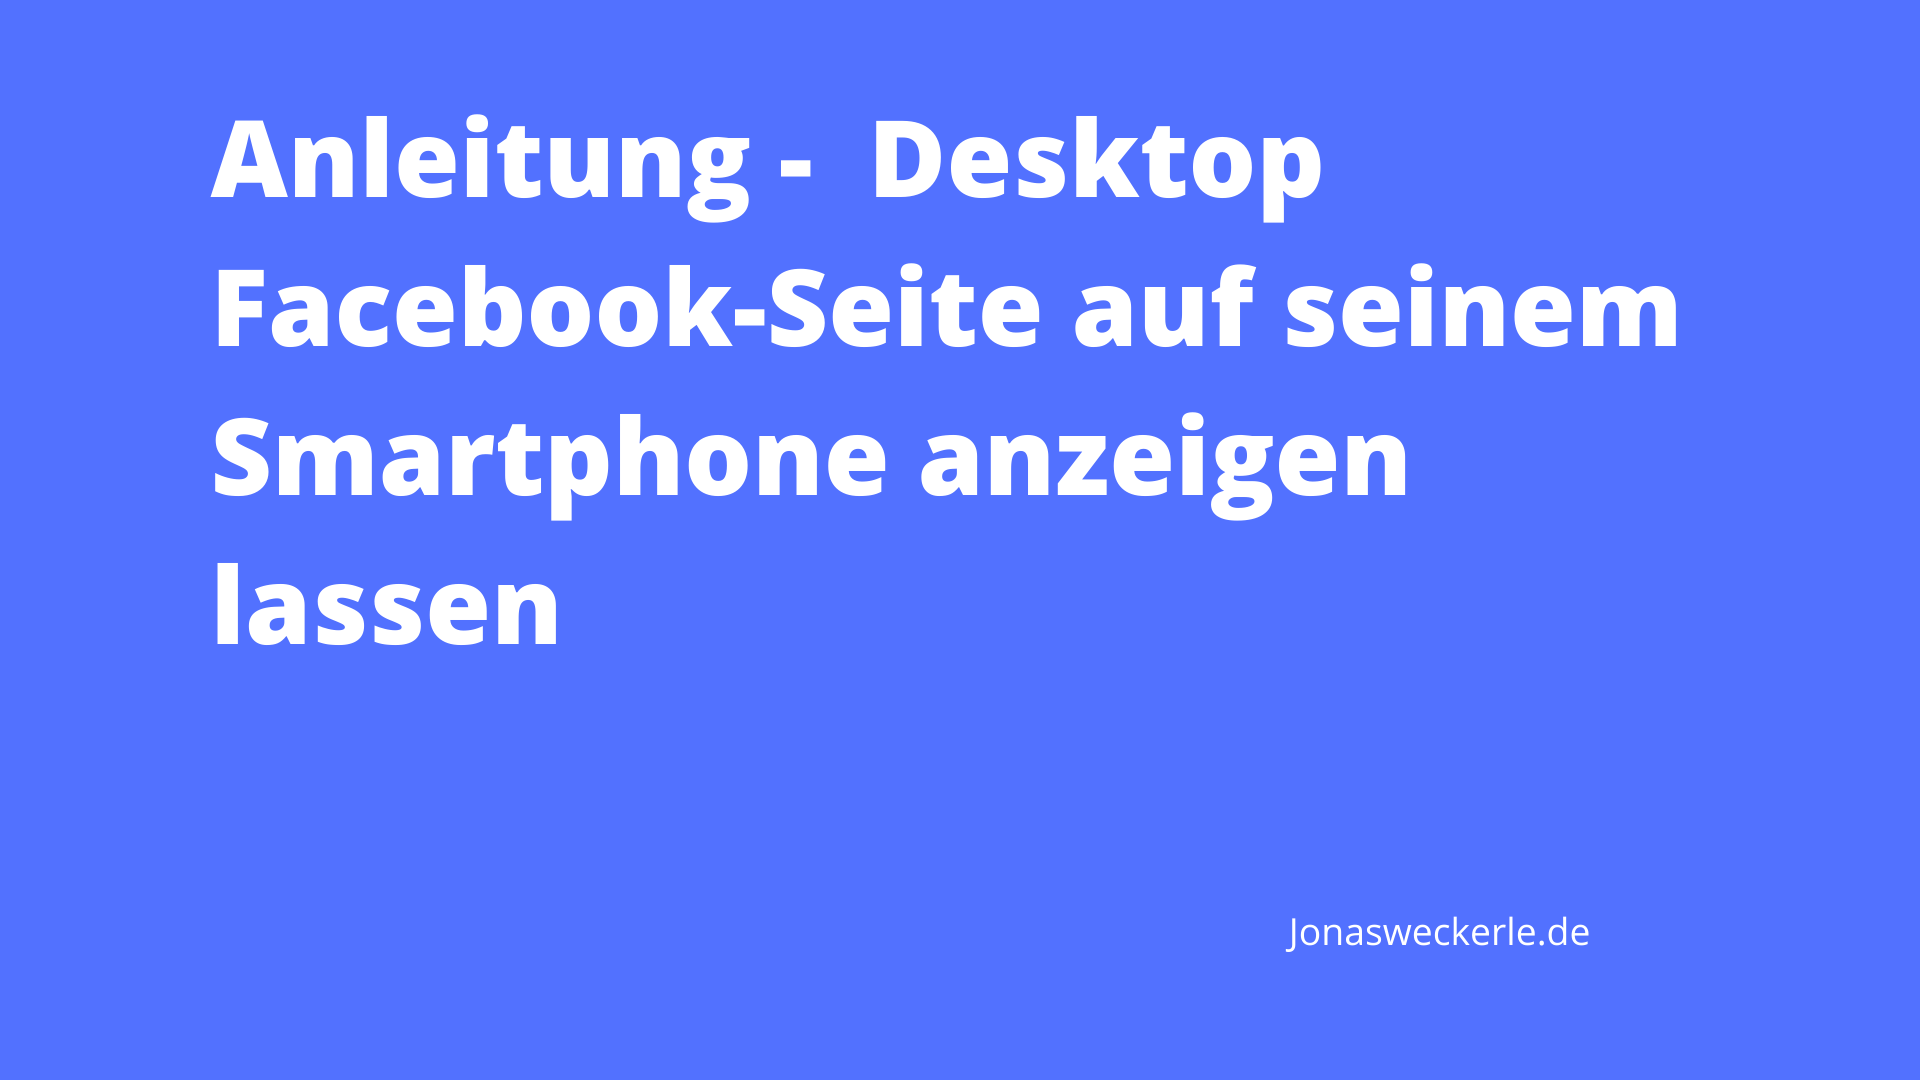 Anleitung - Desktop Facebook-Seite auf seinem Smartphone anzeigen lassen